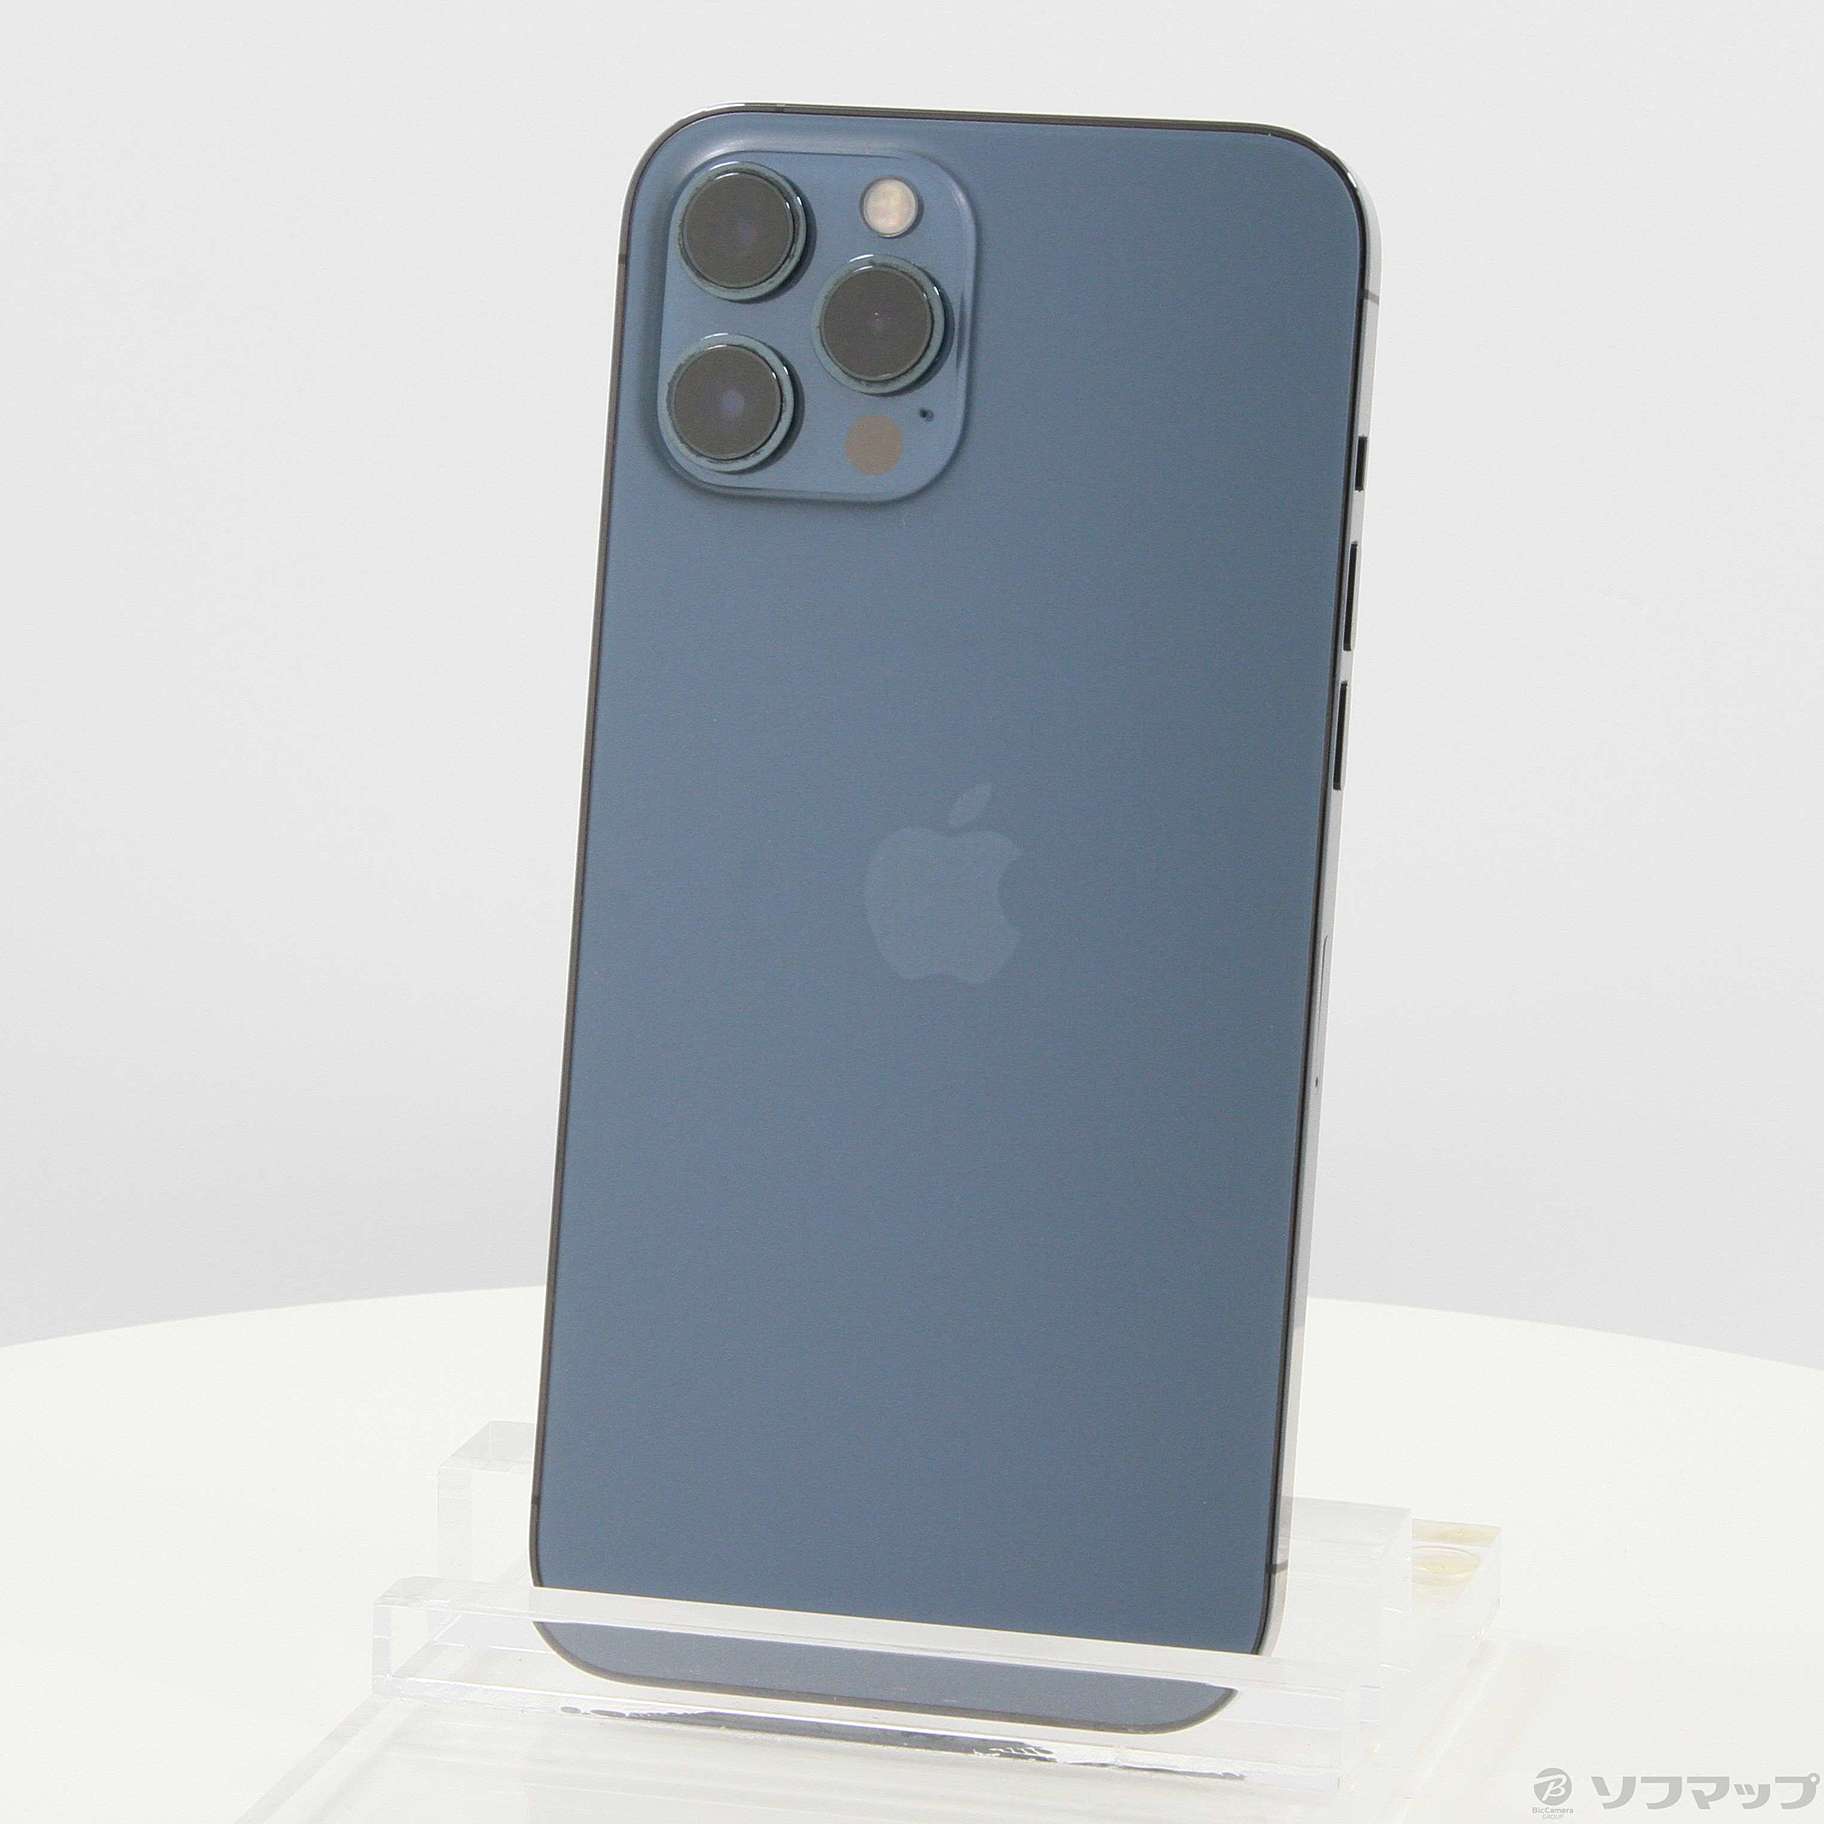 Apple iPhone 12 Pro Max 256GB パシフィックブルー